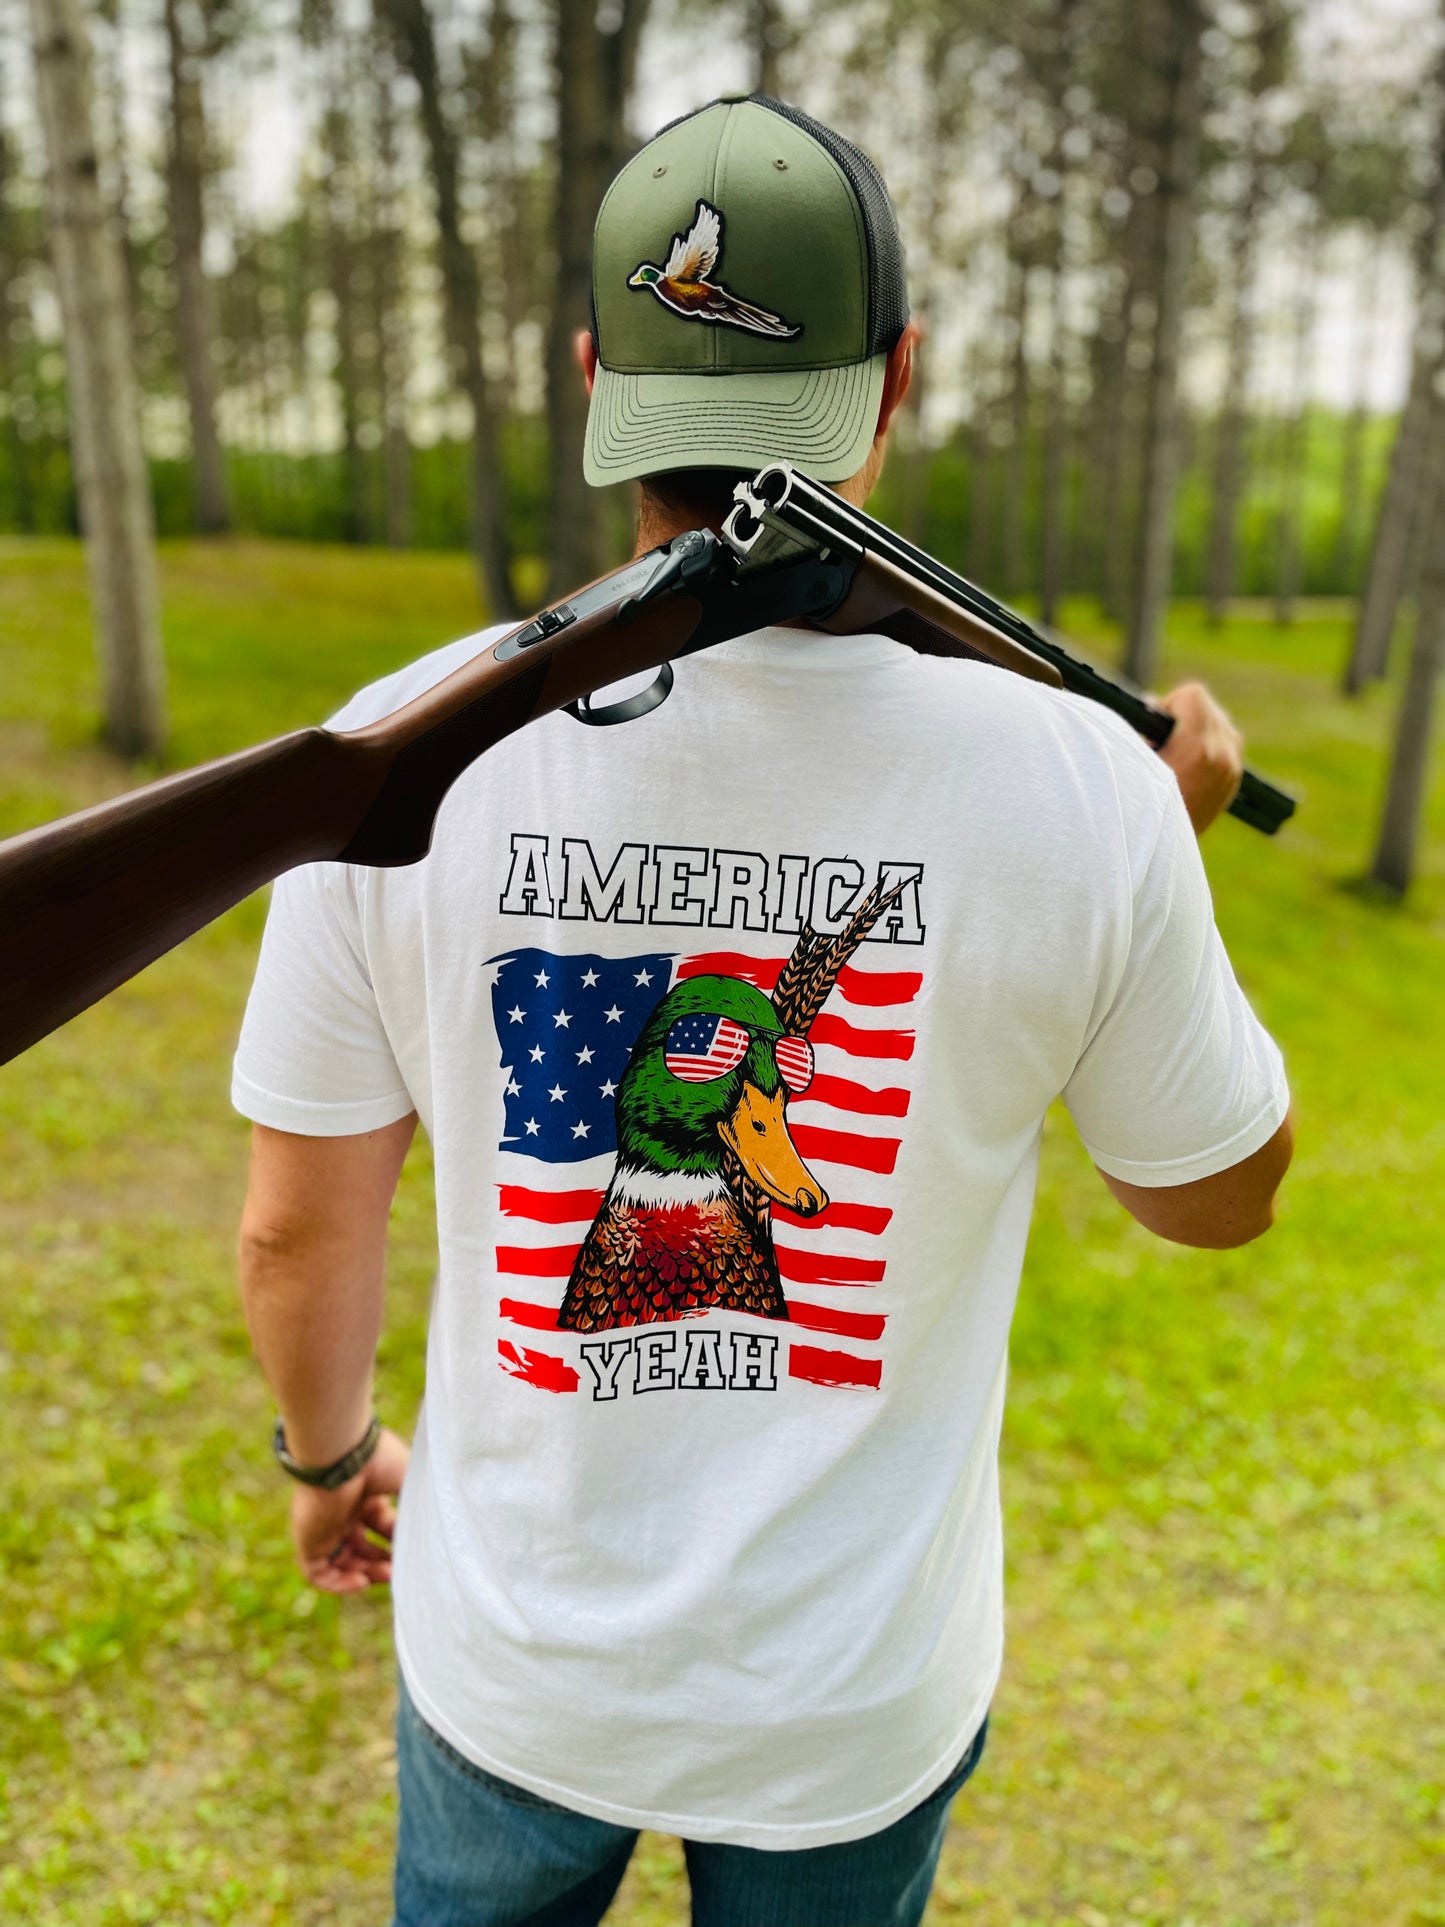 America “Phuck” Yeah Shirt